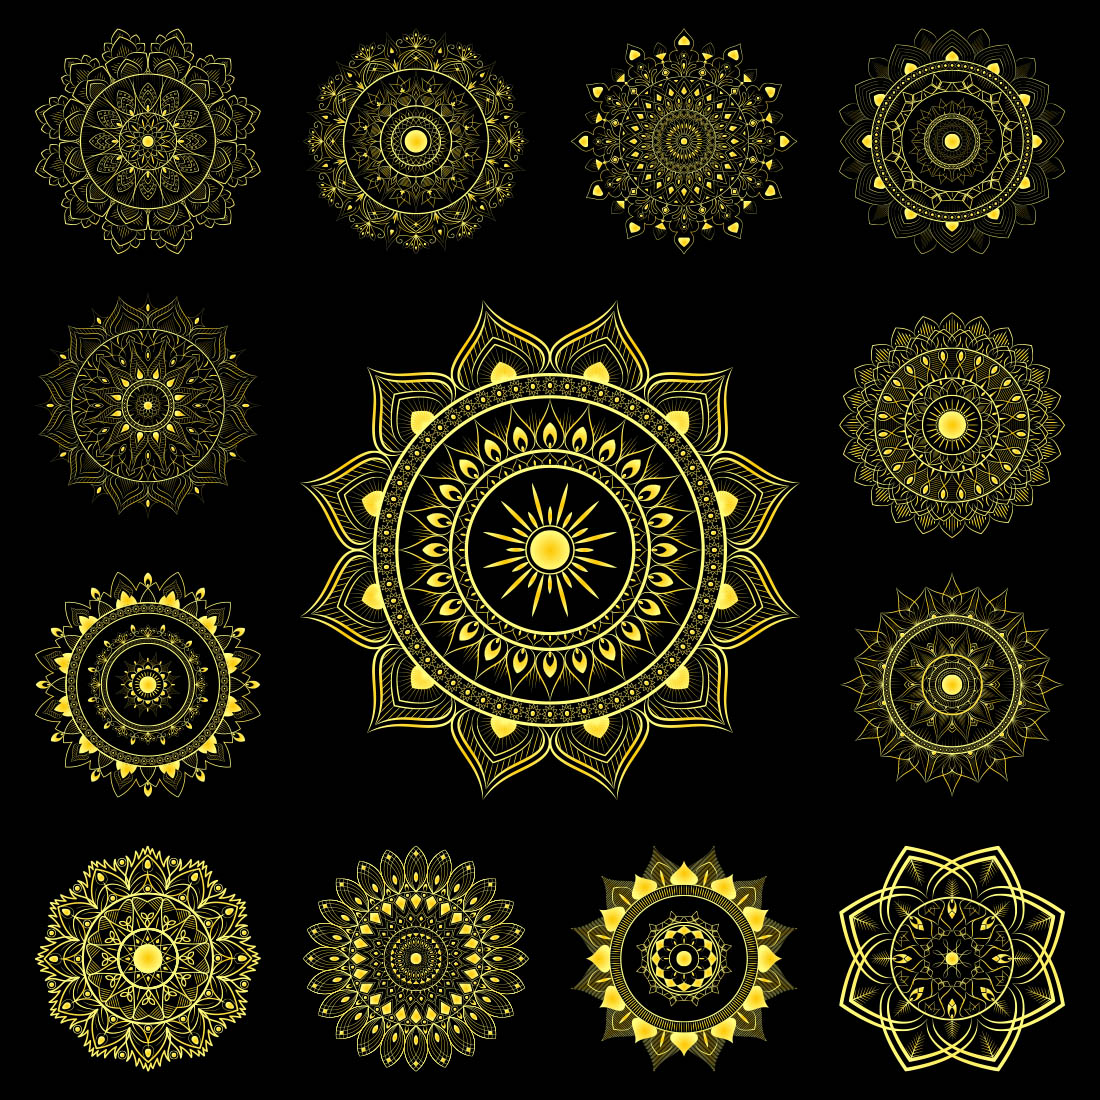 13 Luxury Golden Mandala with Black Background cover image.